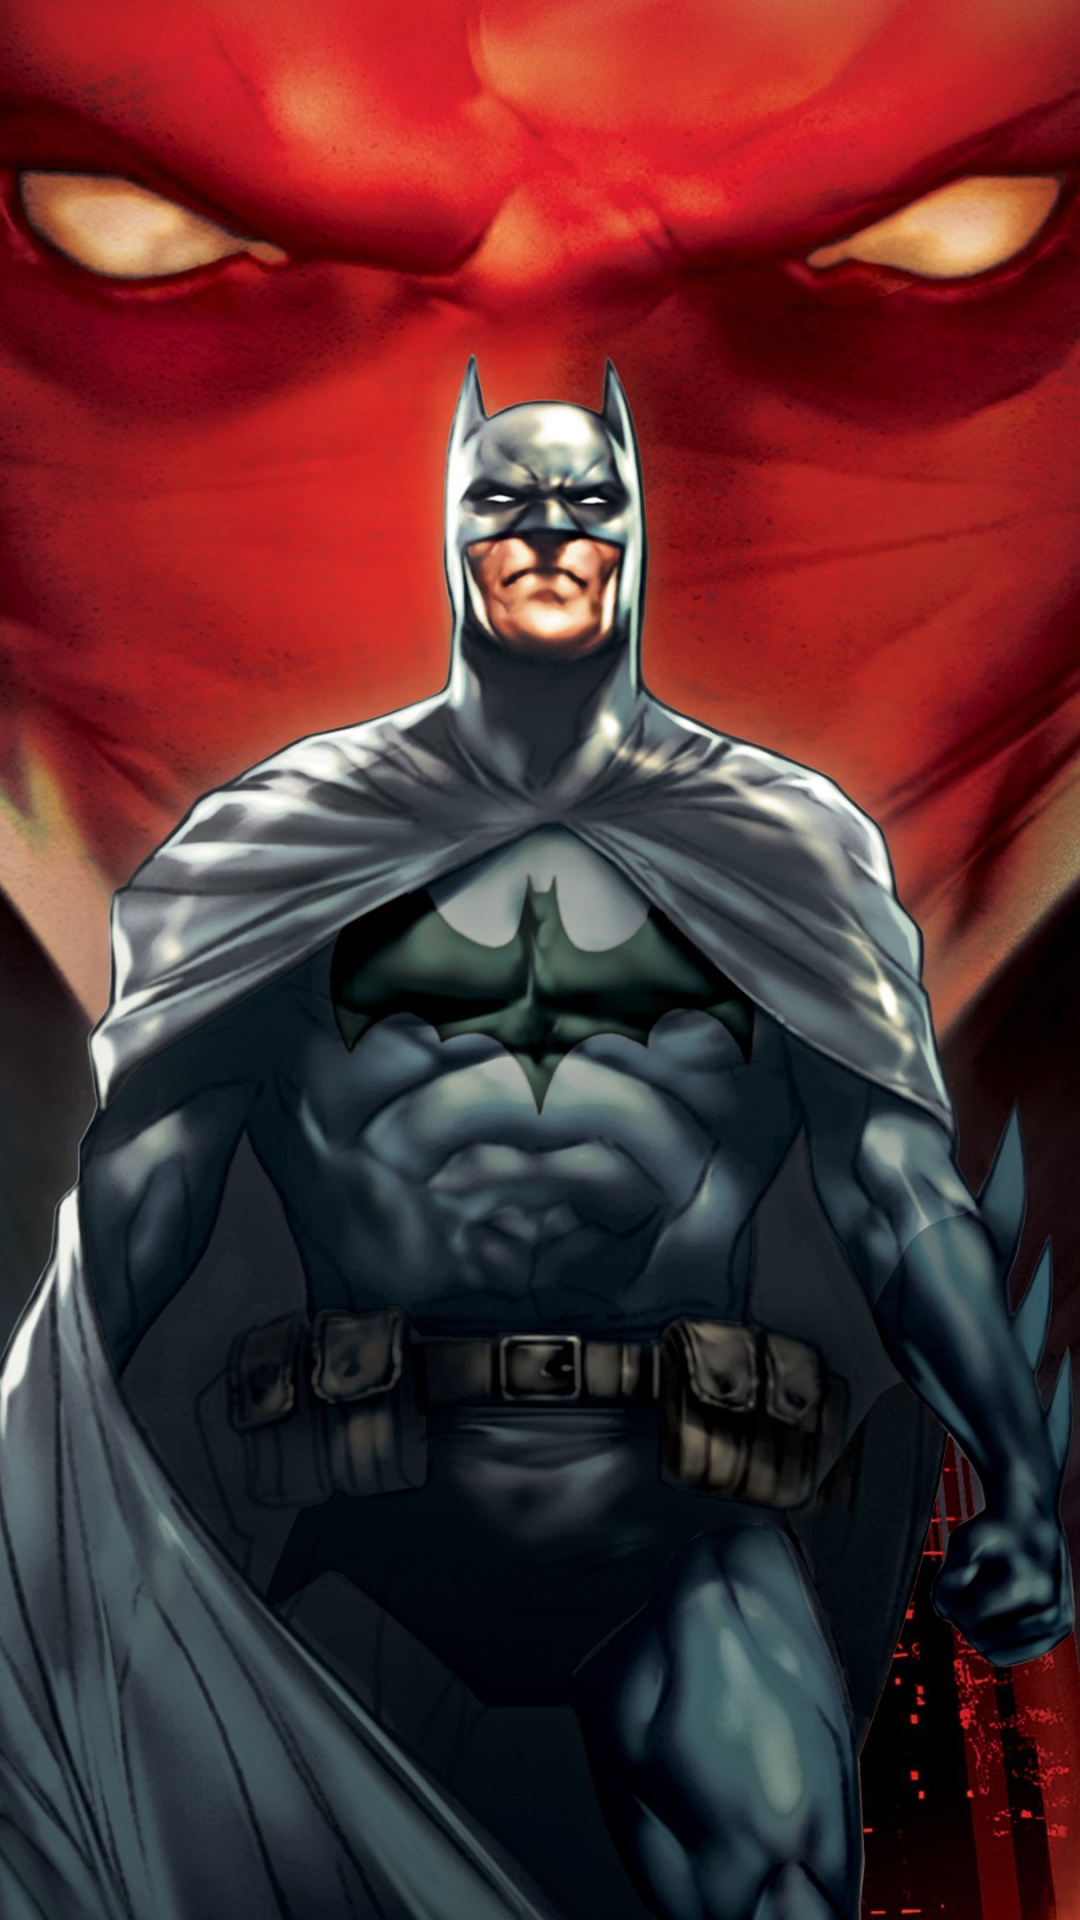 Скачать обои Бэтмен: Под Красным Колпаком на телефон бесплатно